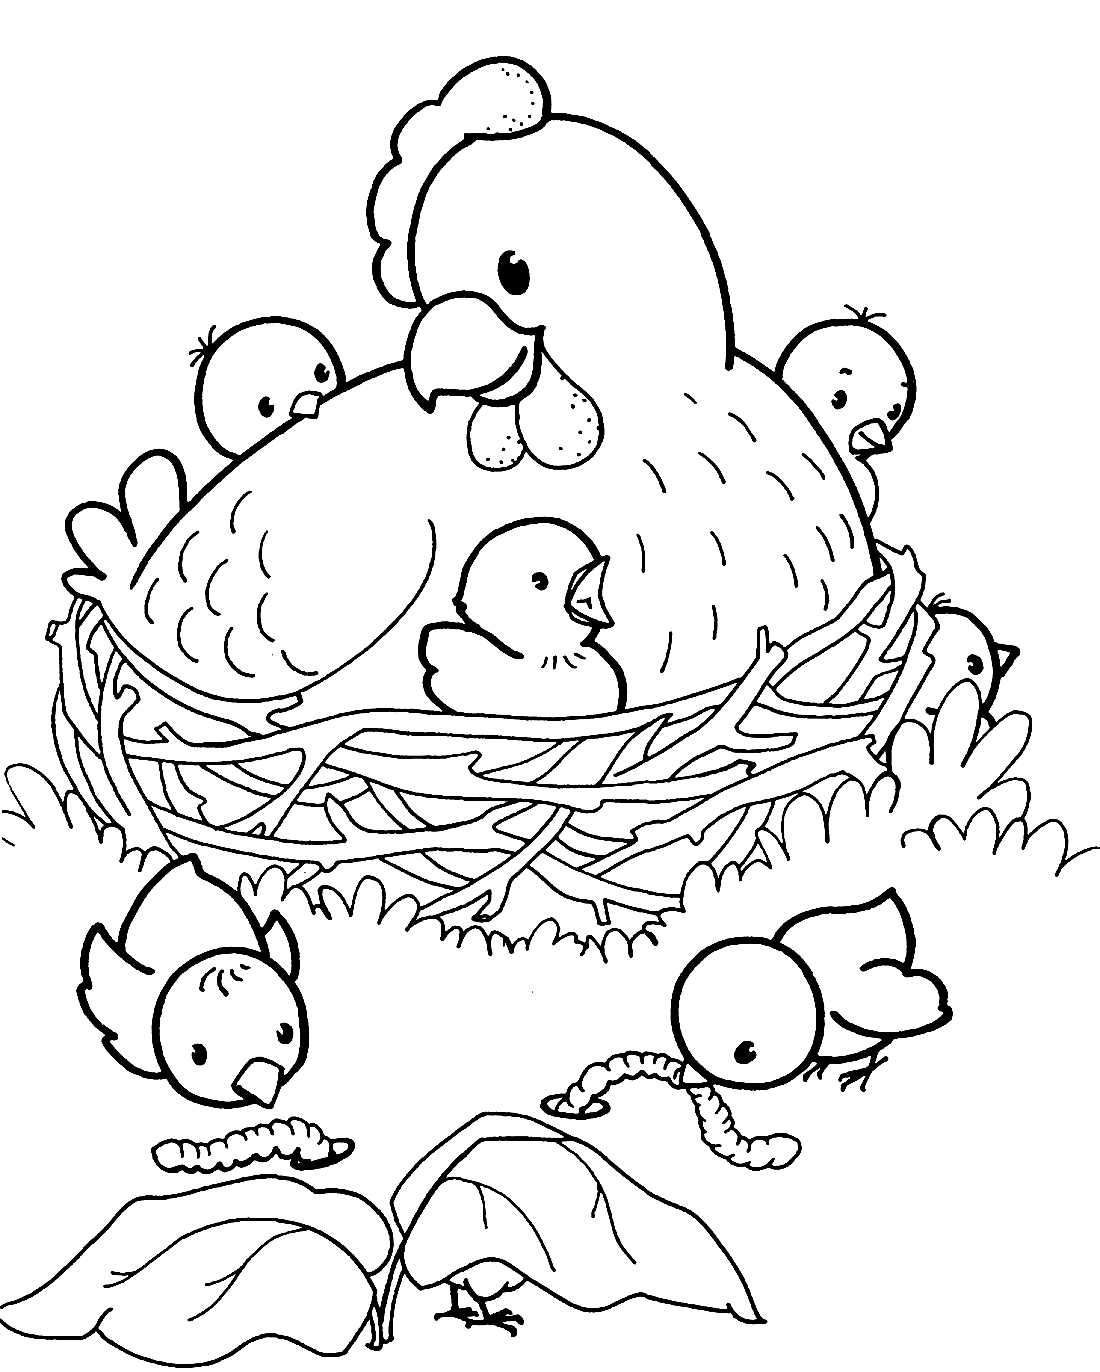 Фото по запросу Книжка раскраска цыплятами - страница 2